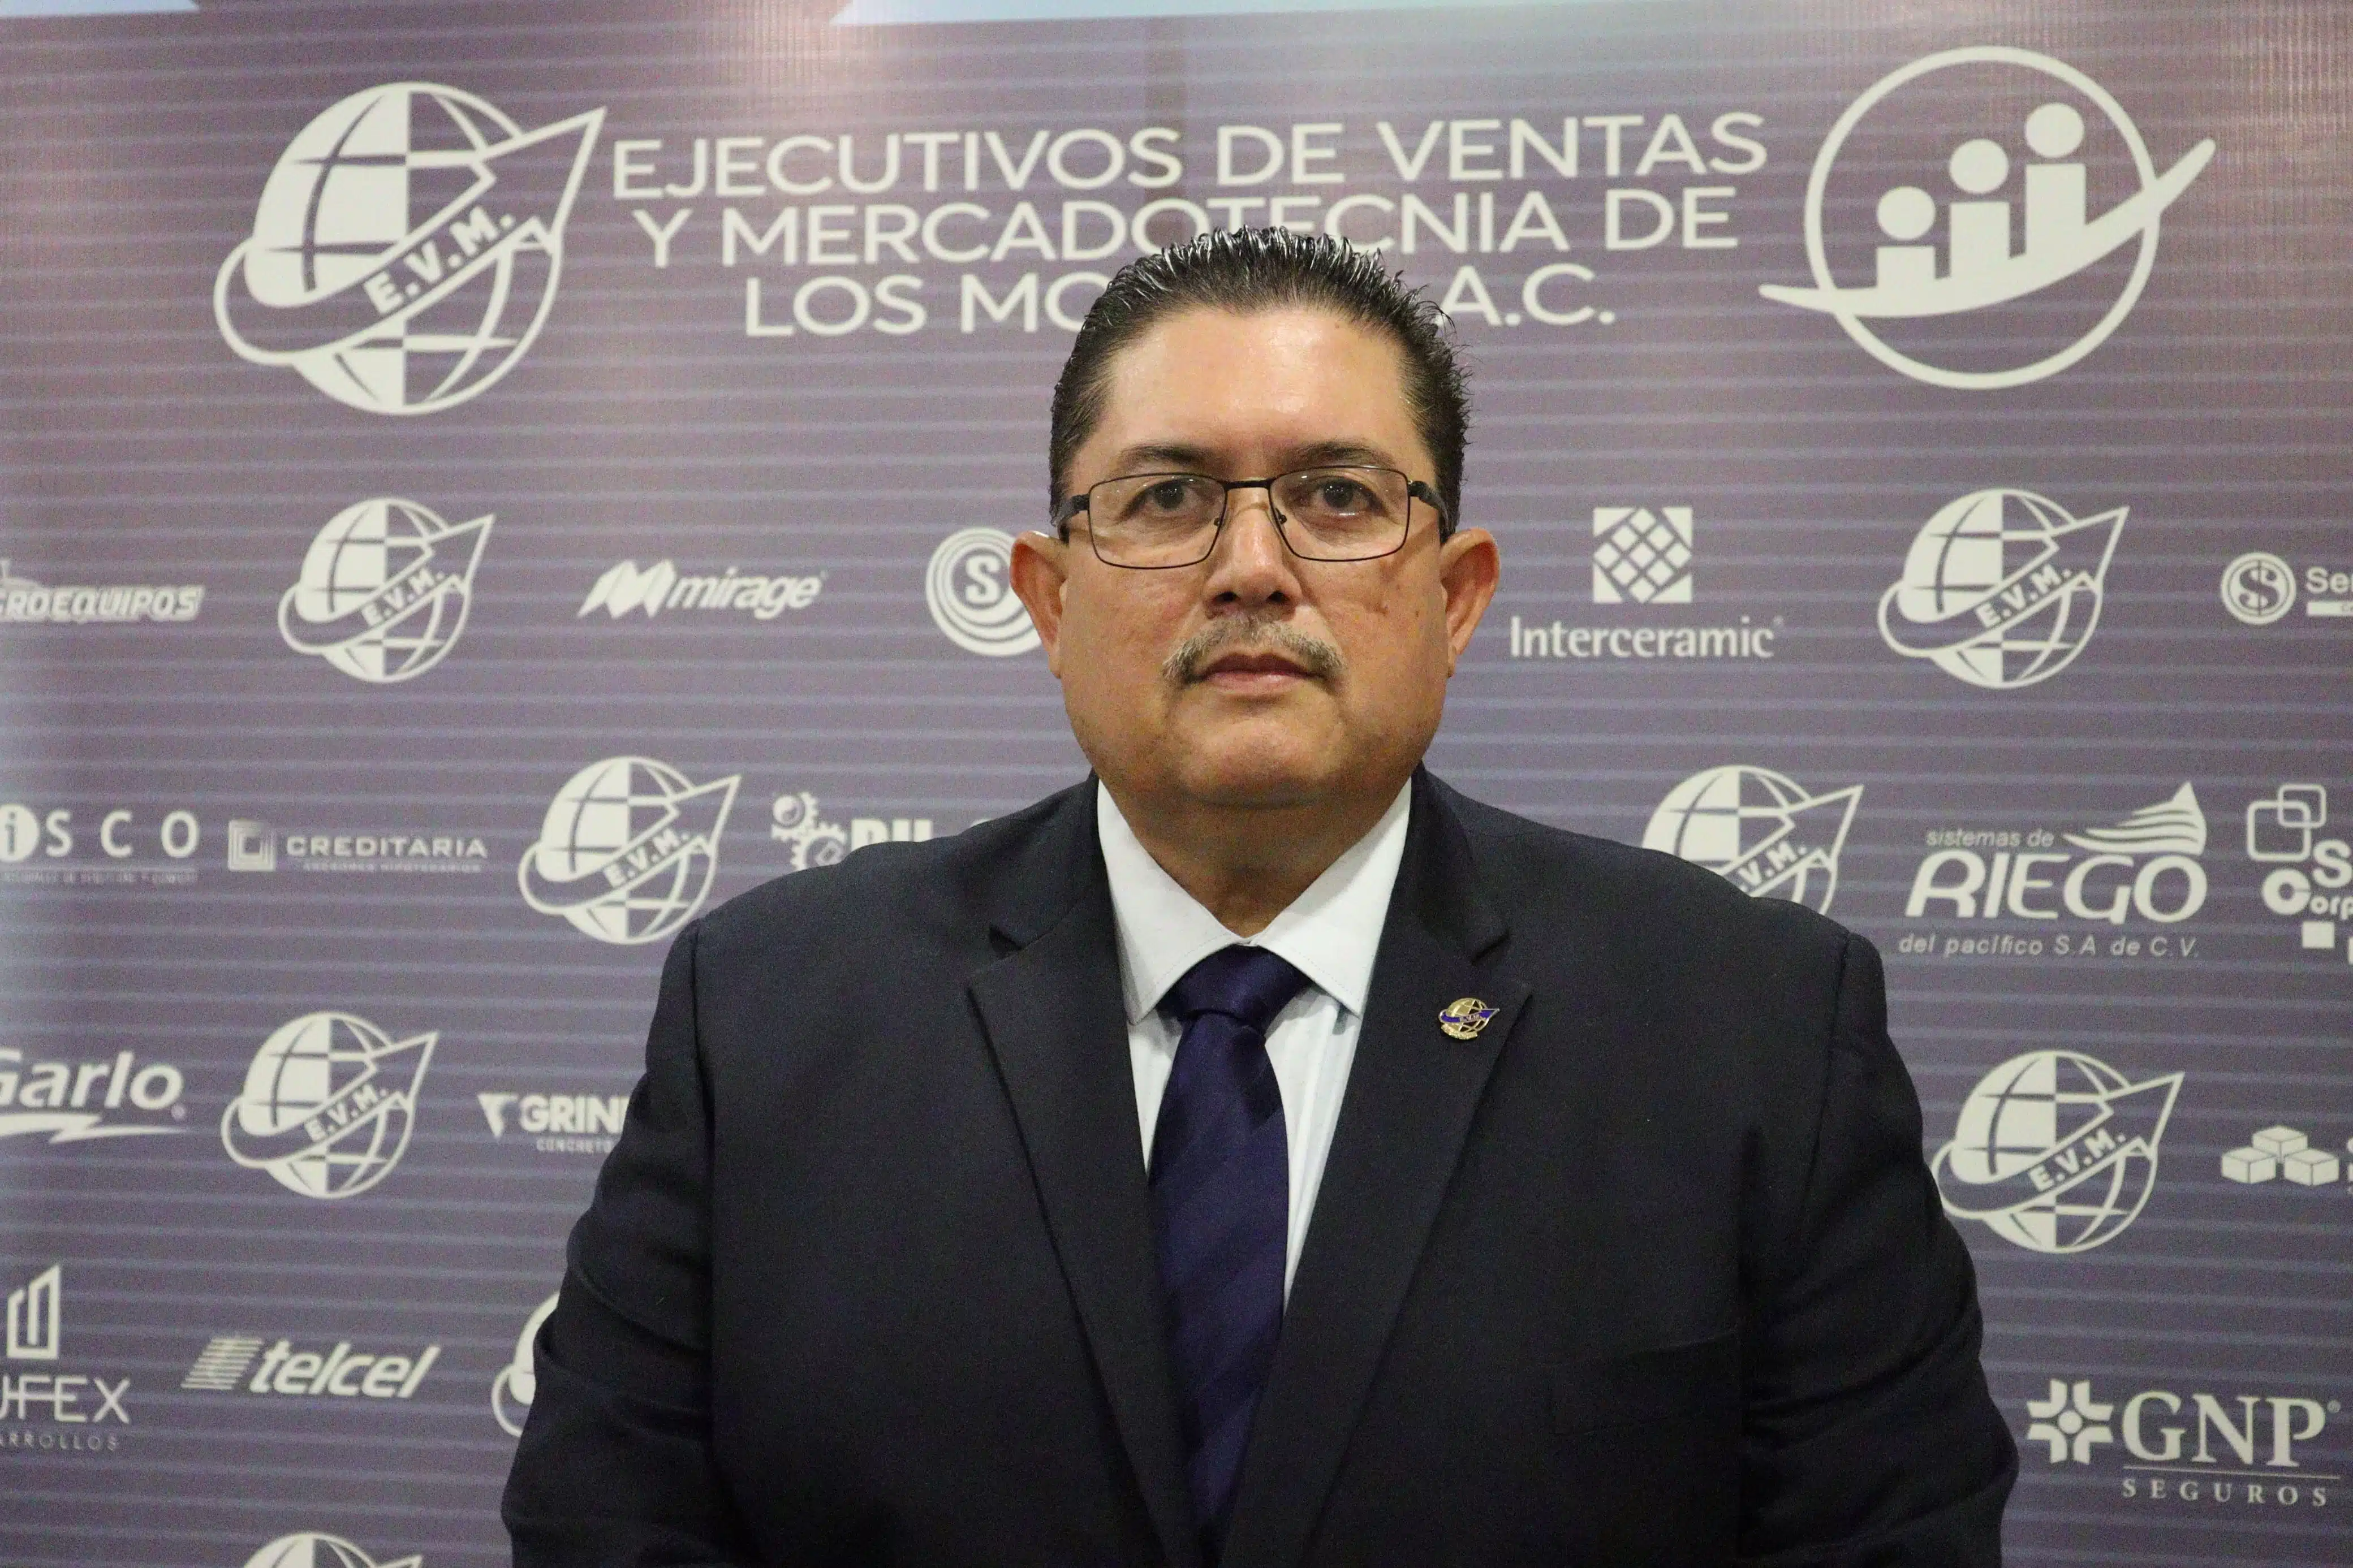 José Eleazar Iribe León, nuevo presidente de Ejecutivos de Ventas y Mercadotecnia Los Mochis A.C.